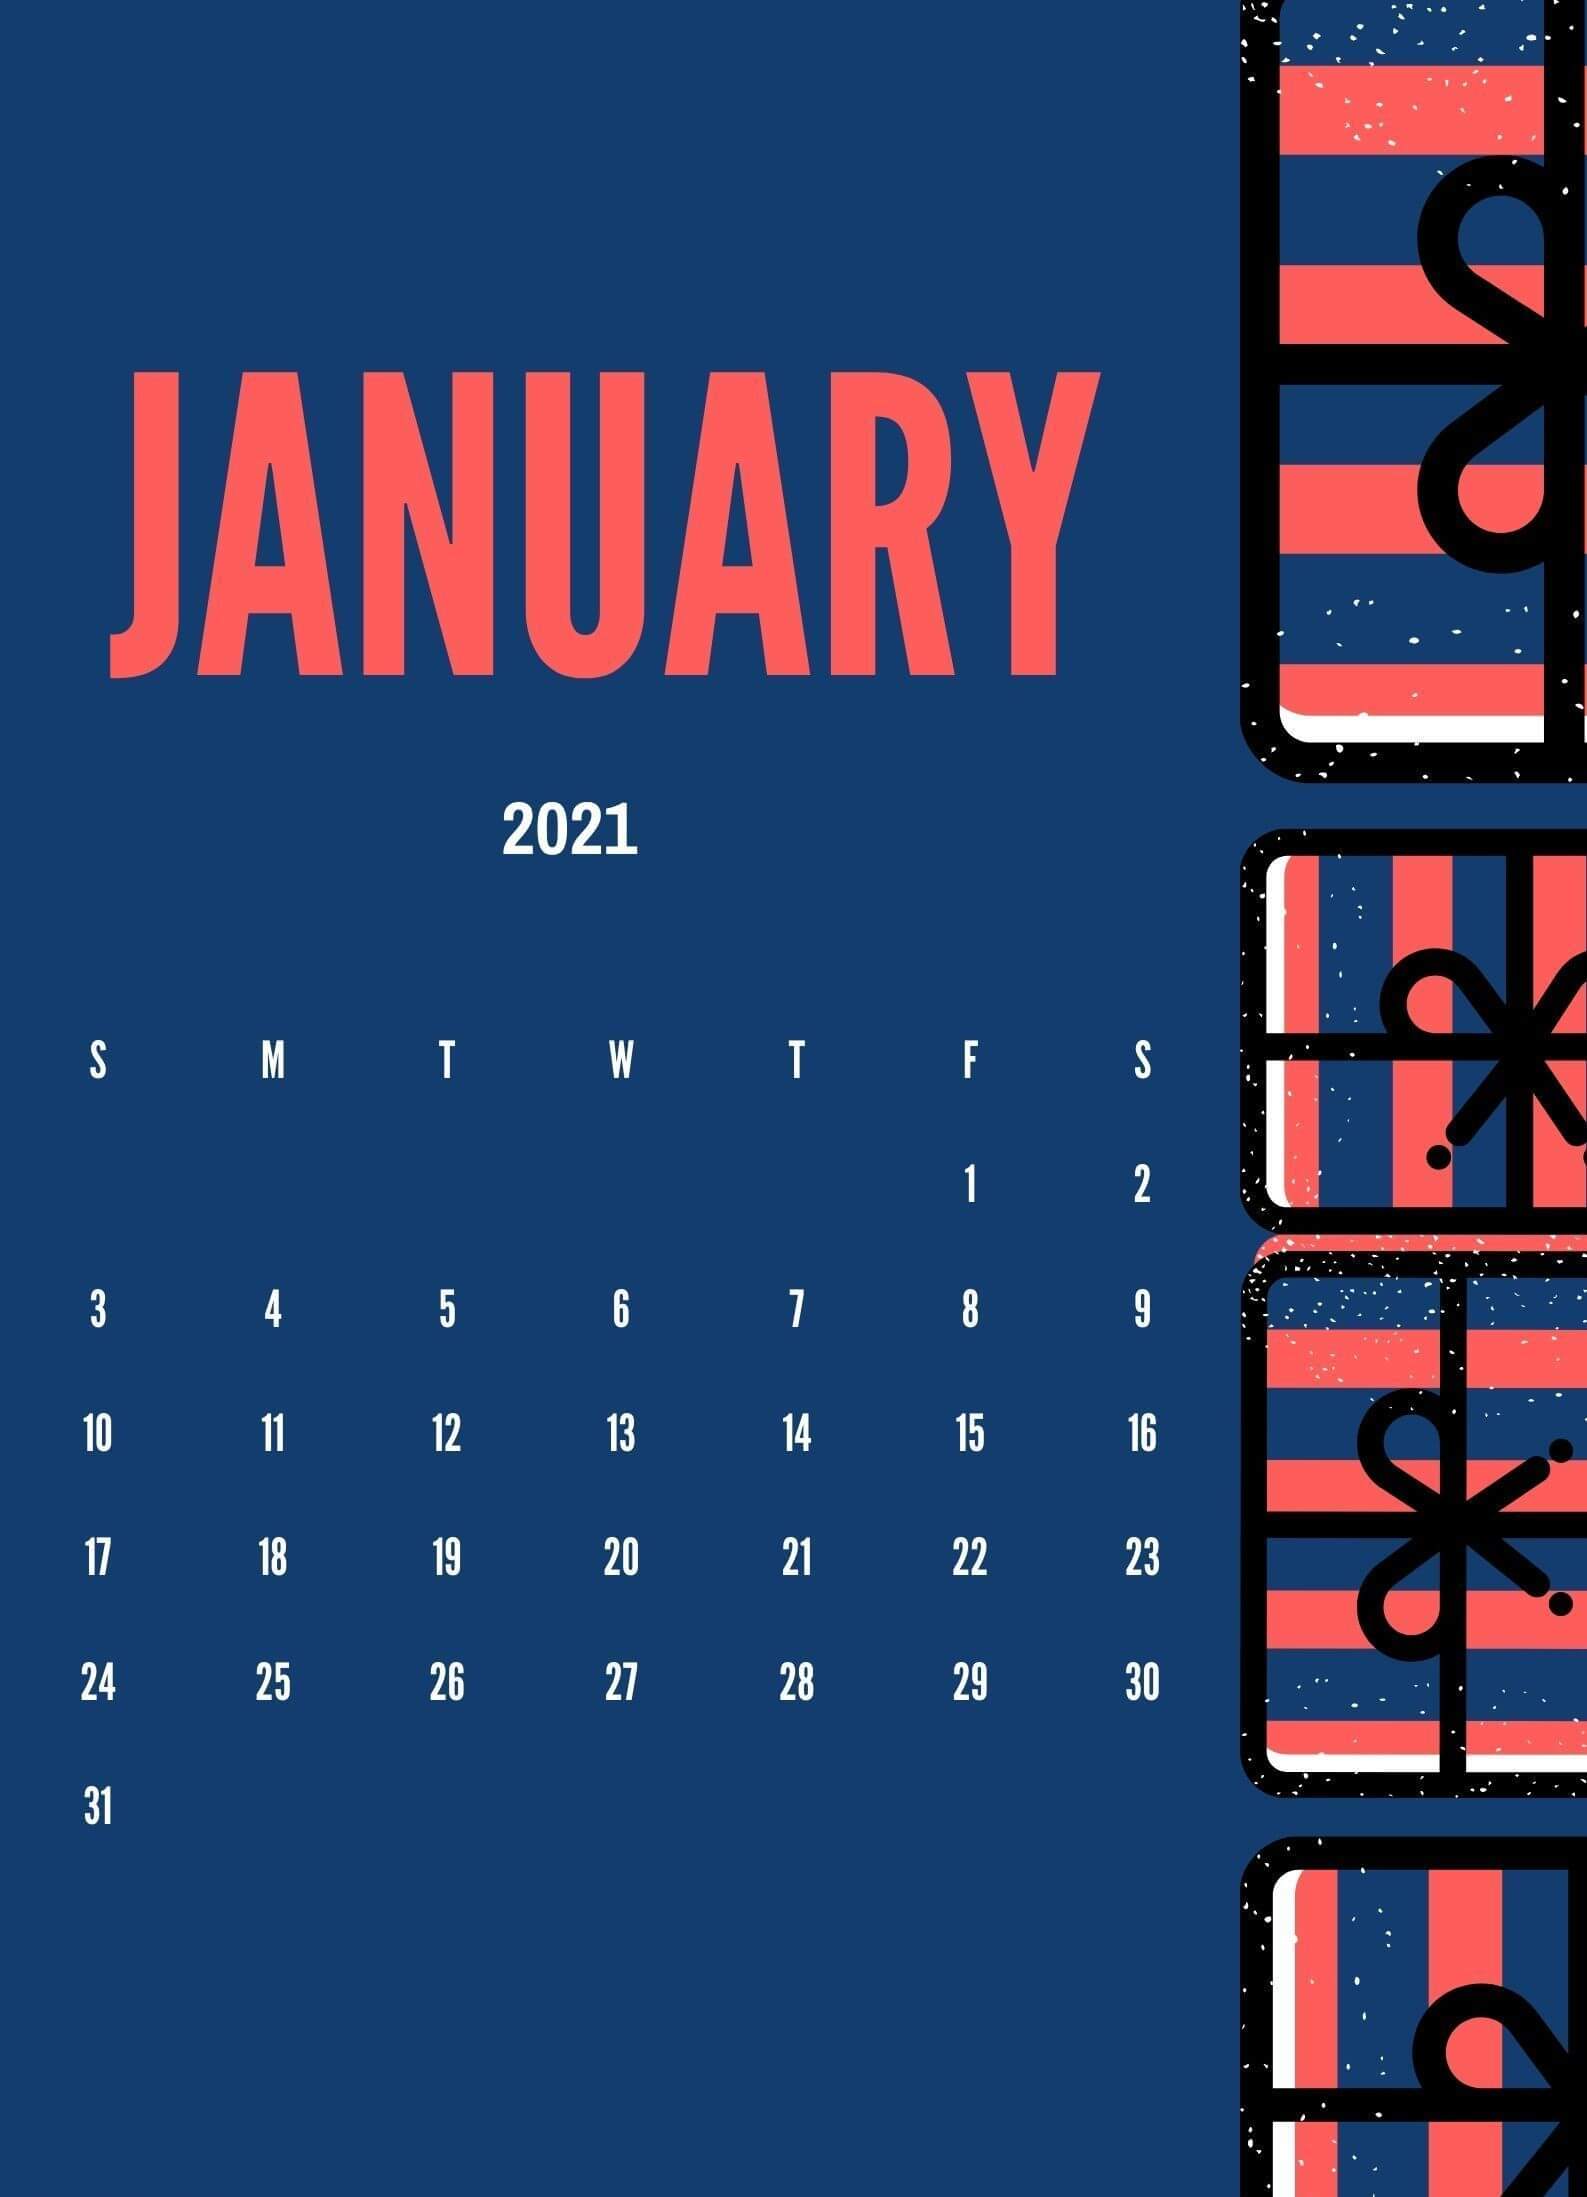 Cute January 2021 Calendar